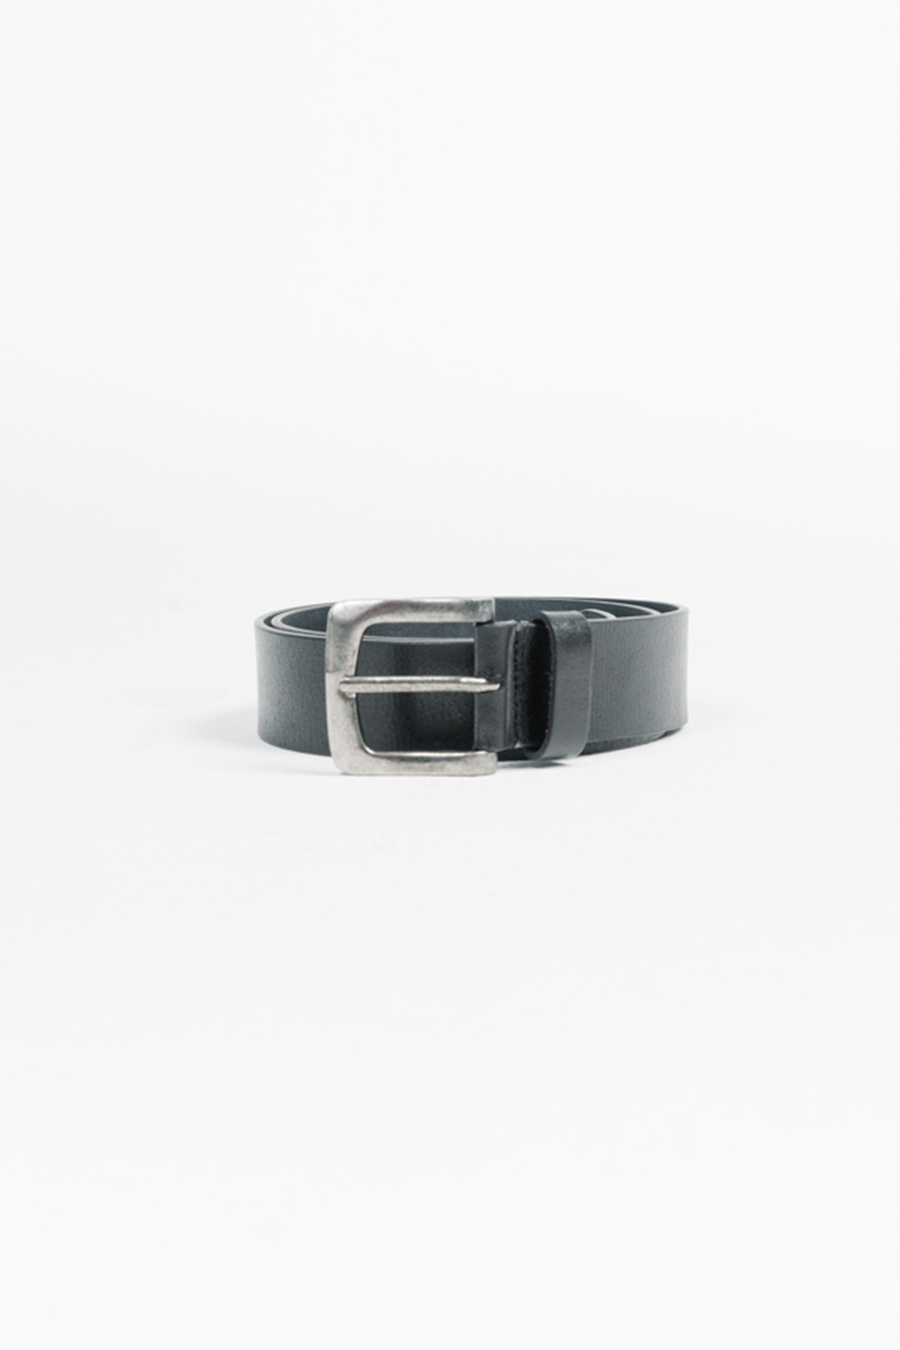 Wide Leather Belt | Black - Main Image Number 1 of 2